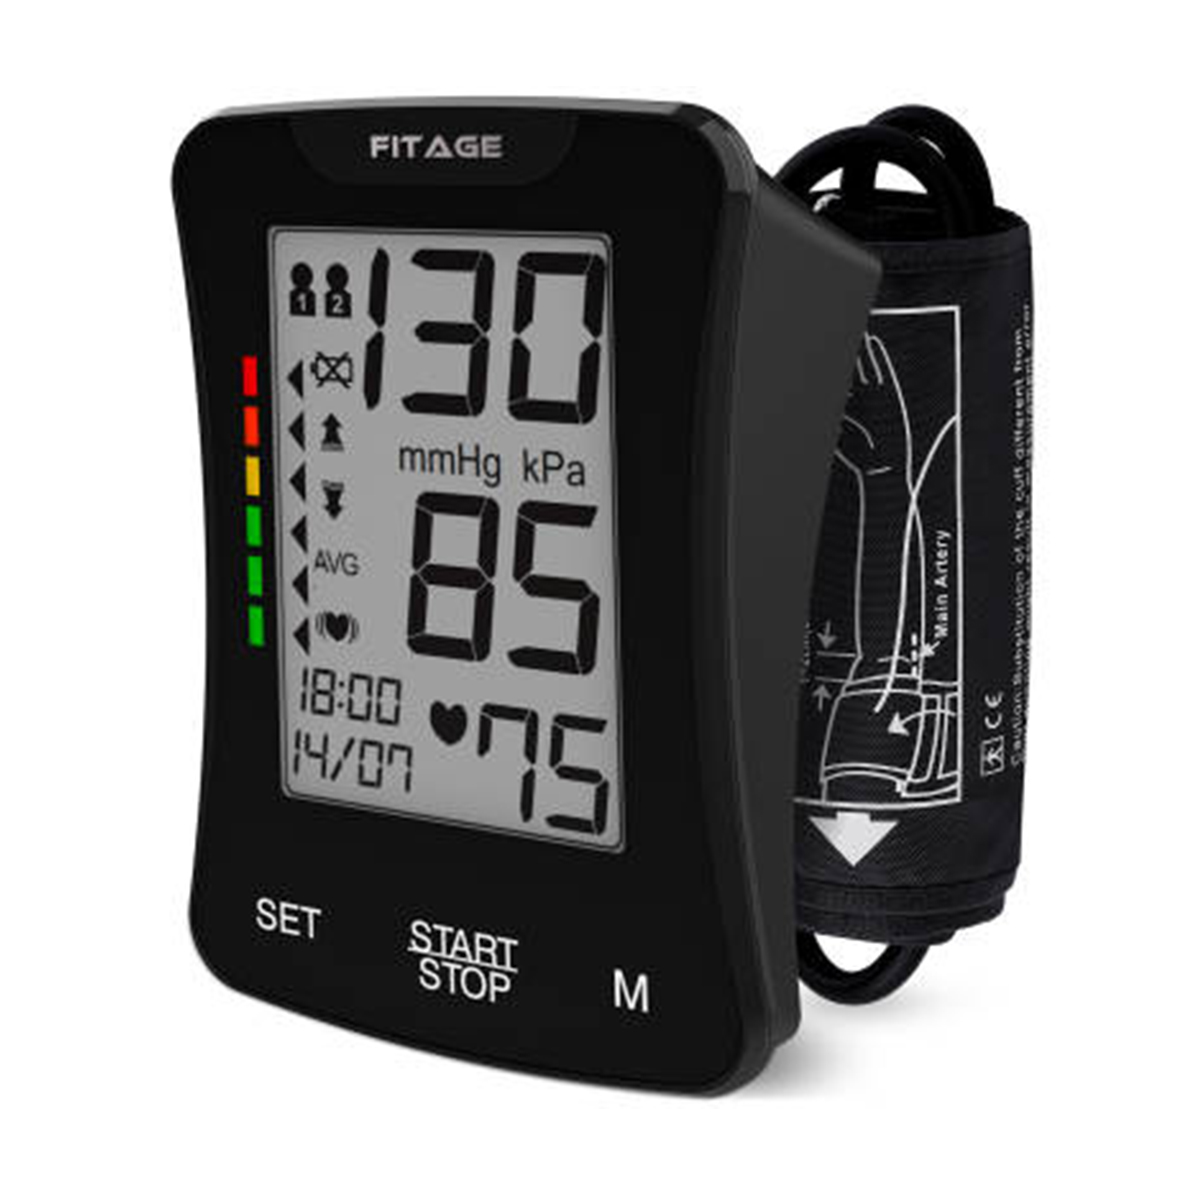 Monitor de presión arterial dixital totalmente automático tipo brazo con conversación